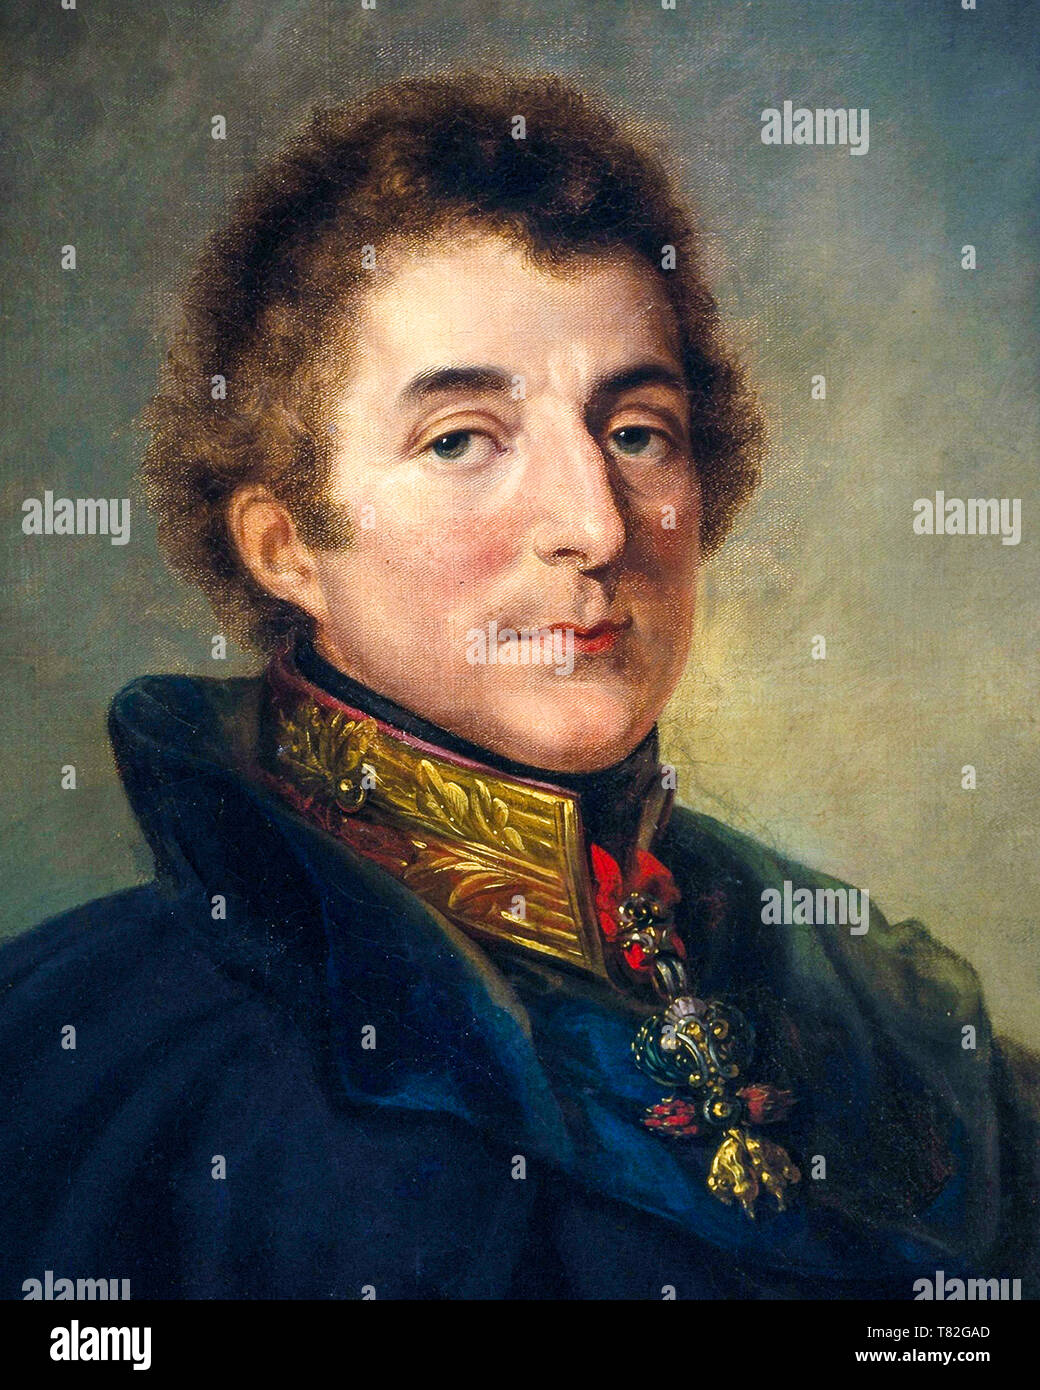 1er duc de Wellington, portrait peinture (détail) par Peter Edward, 1820 Stroehling Banque D'Images